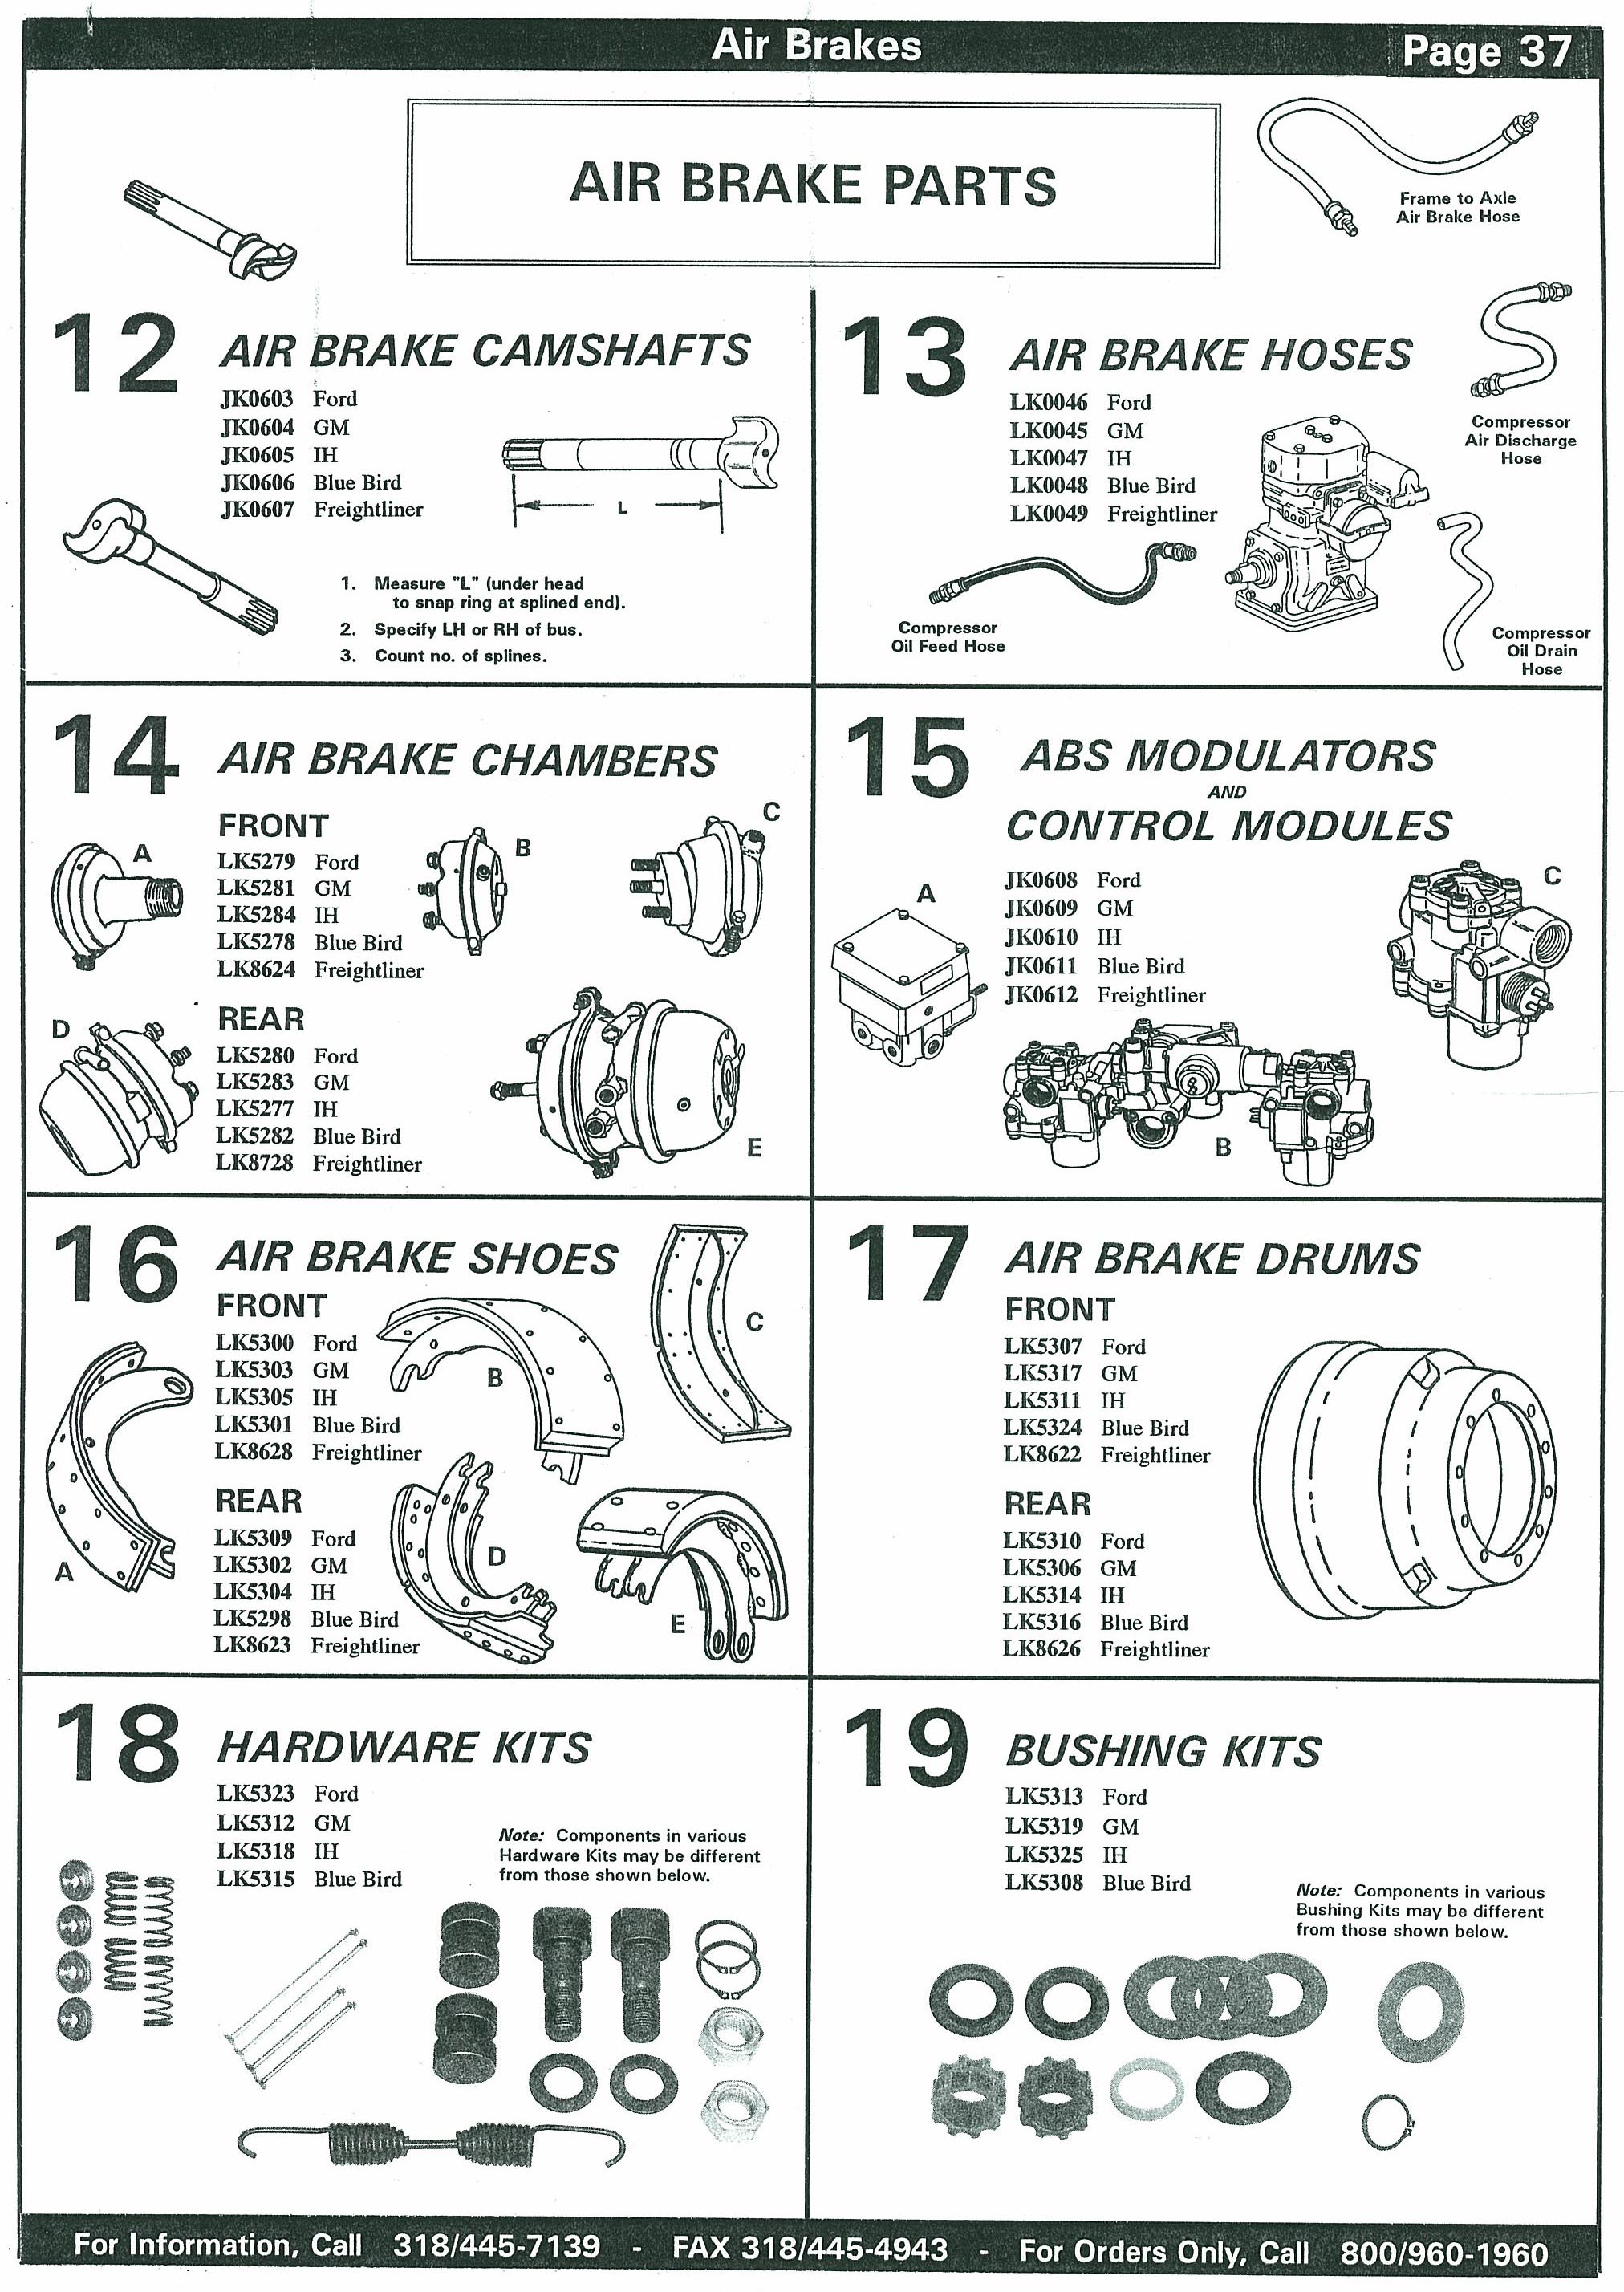 Air Brake Parts